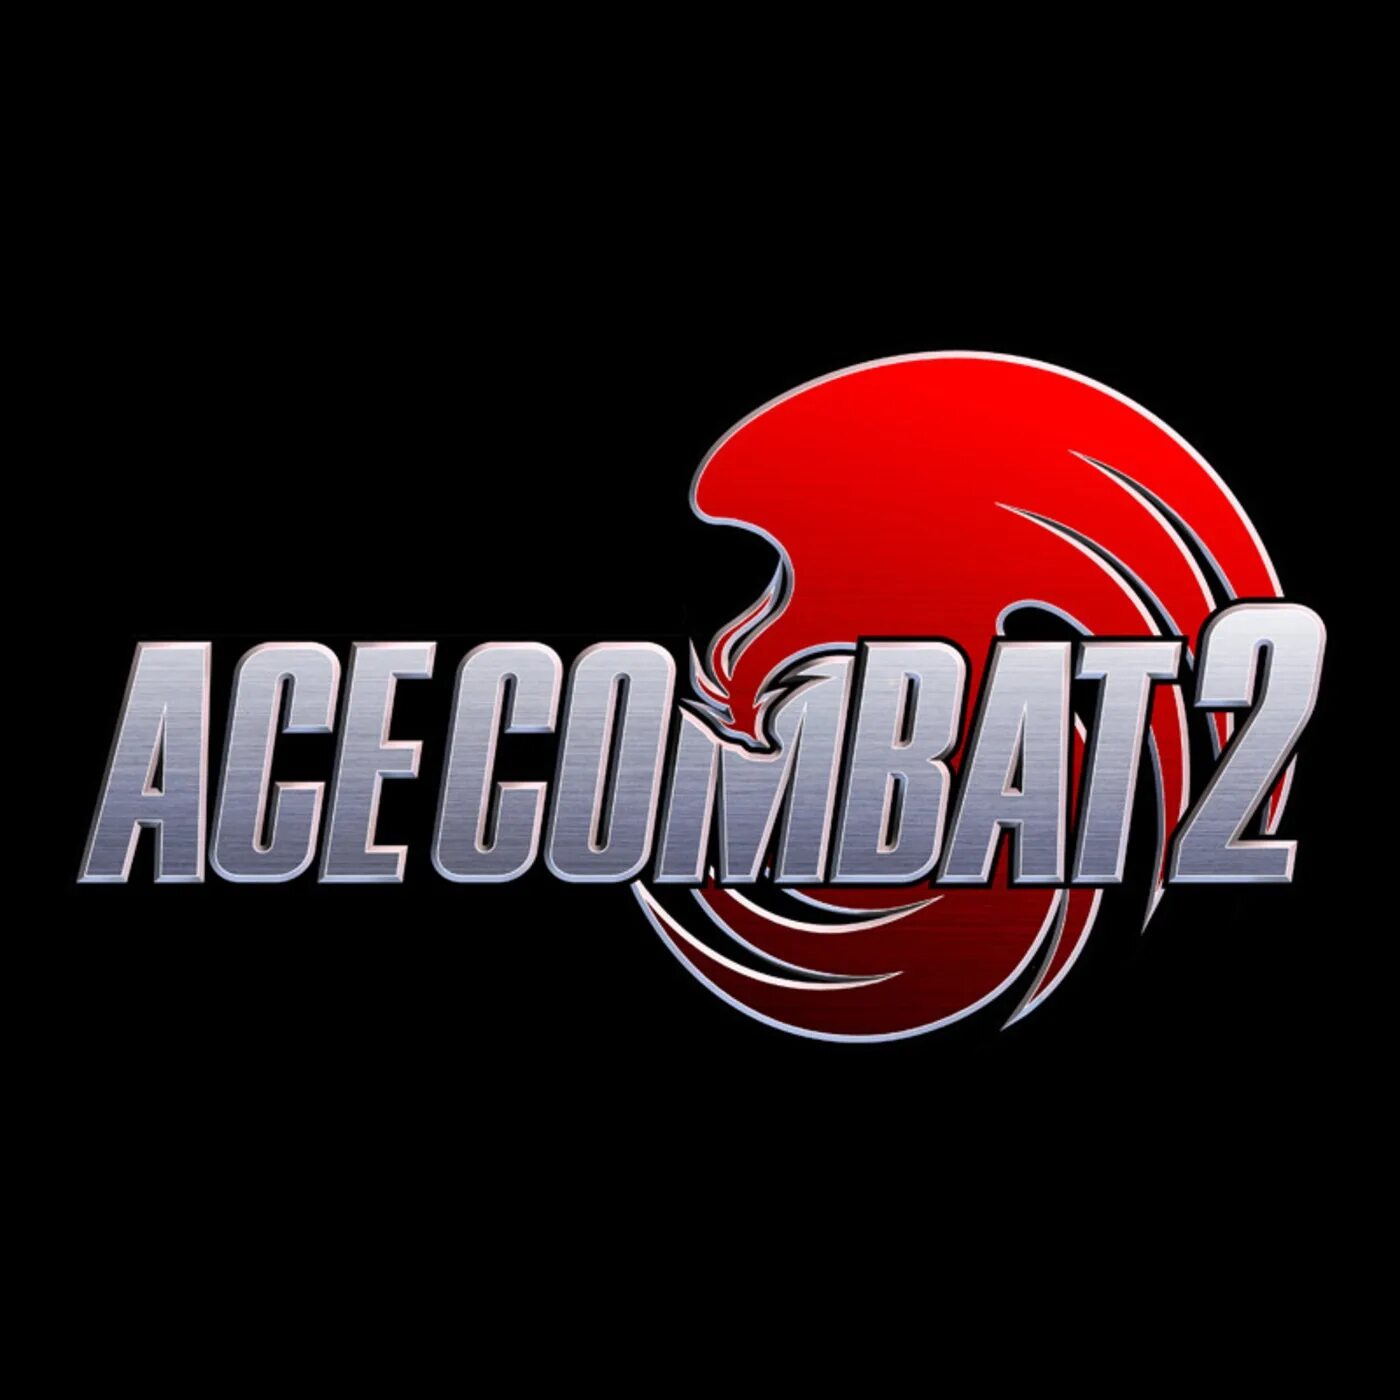 Ace combat 2. Ace Combat 2 logo. Namco logo.